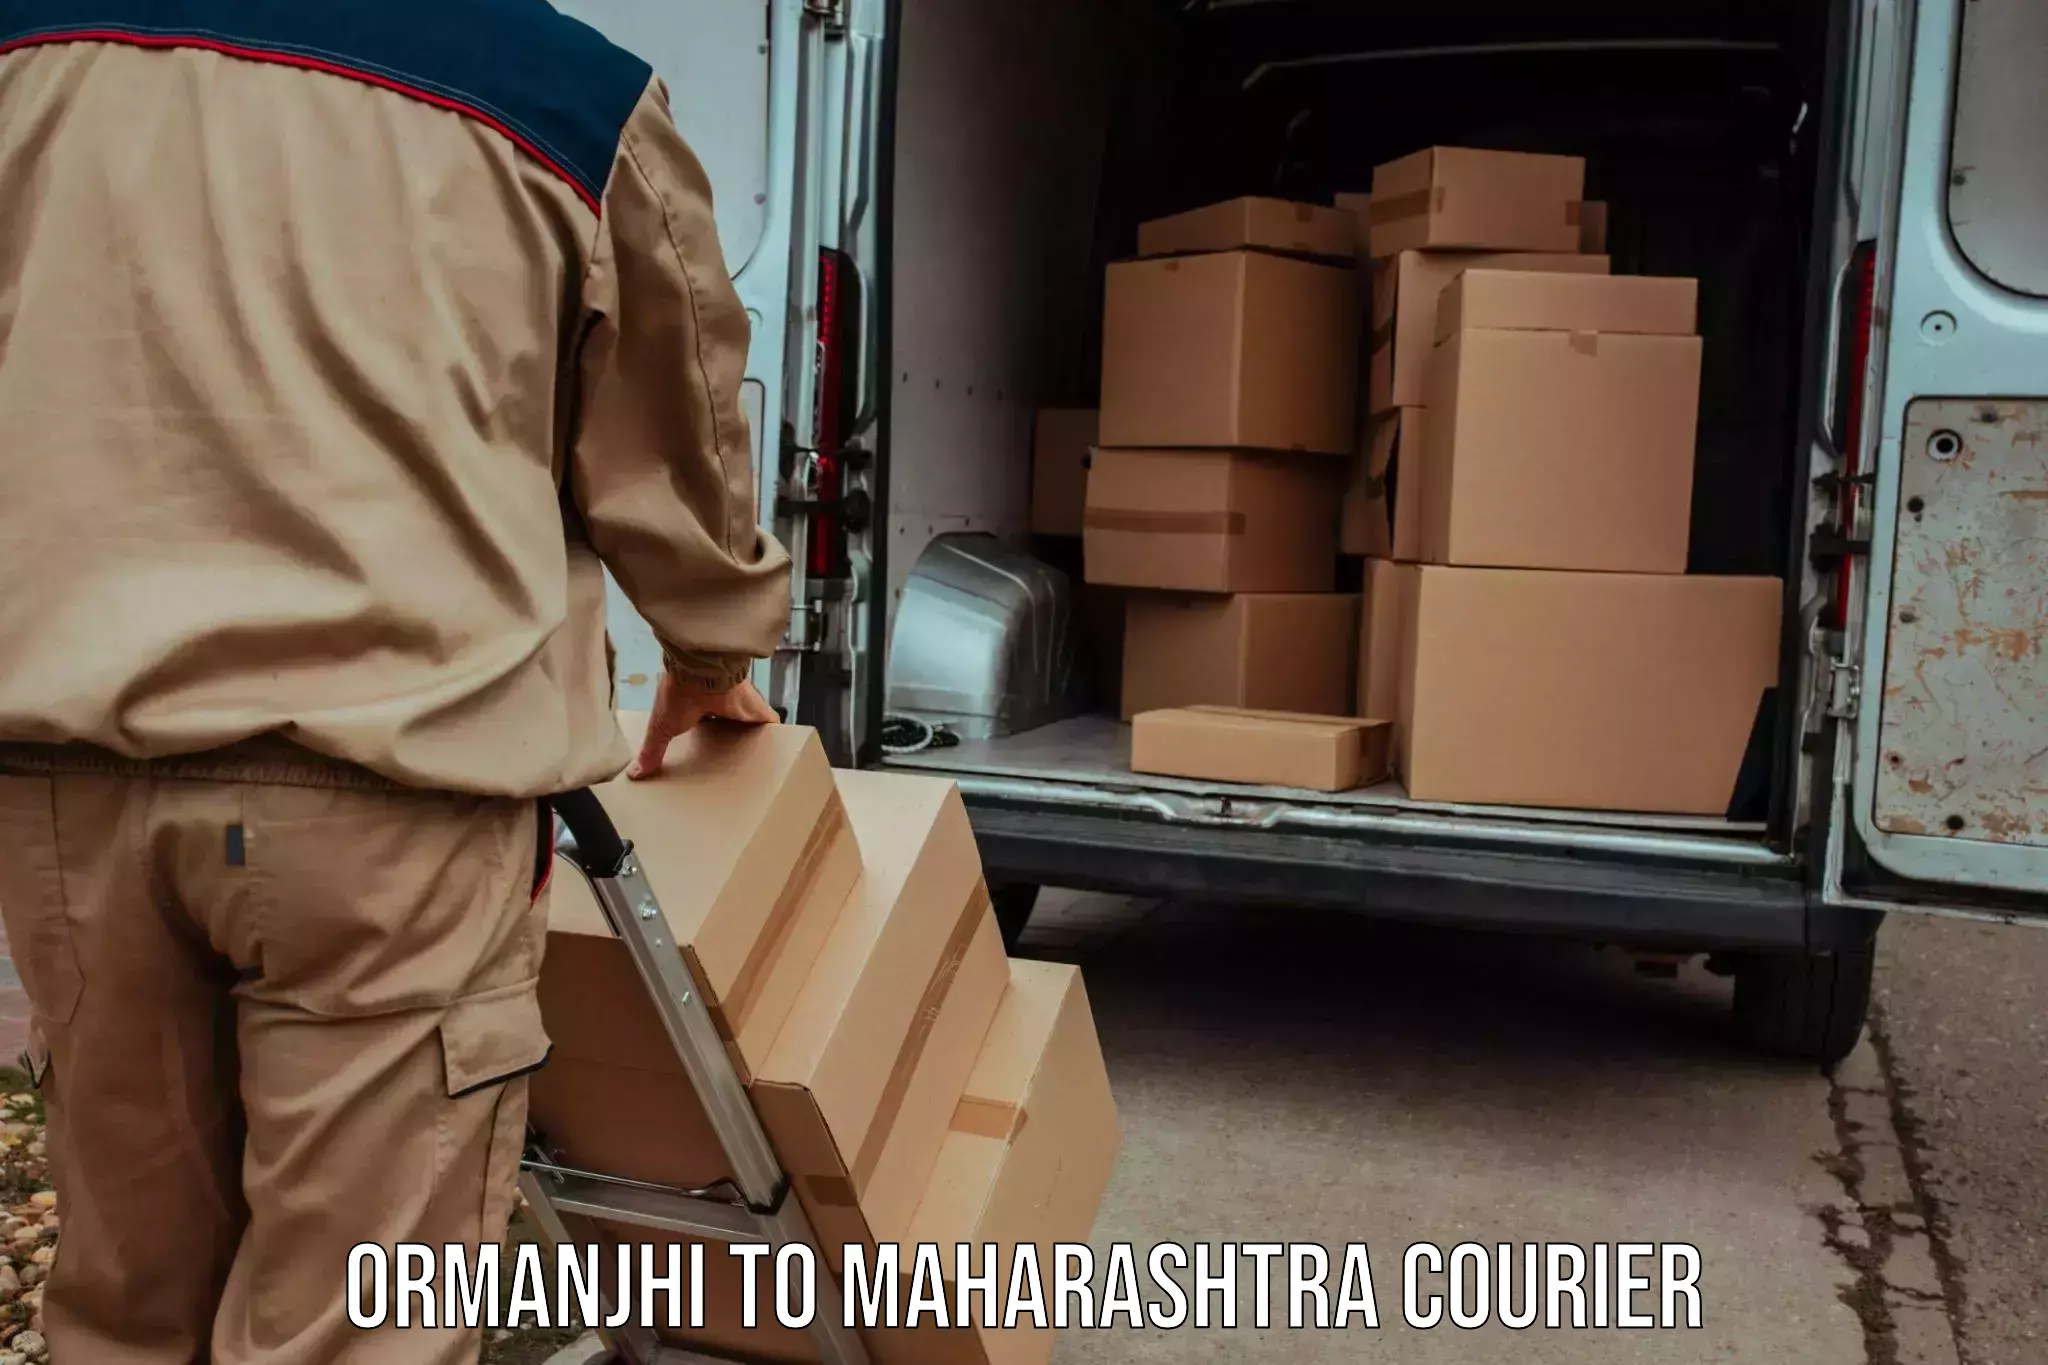 Speedy delivery service Ormanjhi to Maharashtra